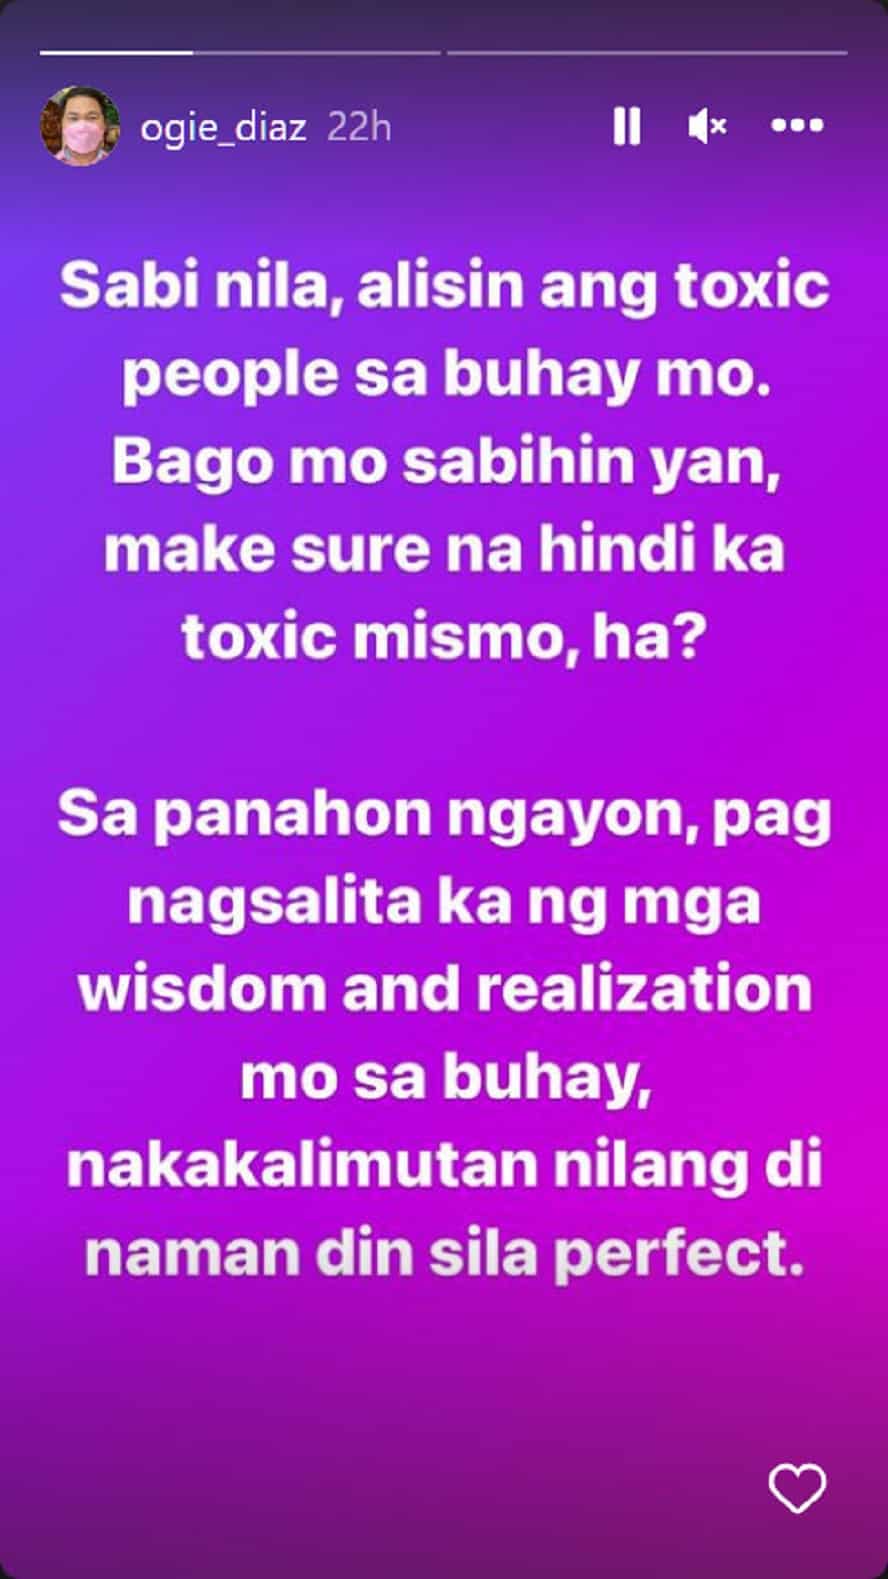 Ogie Diaz, nagpaalala sa mga taong magaling mag-advise: "Make sure di ka toxic mismo"